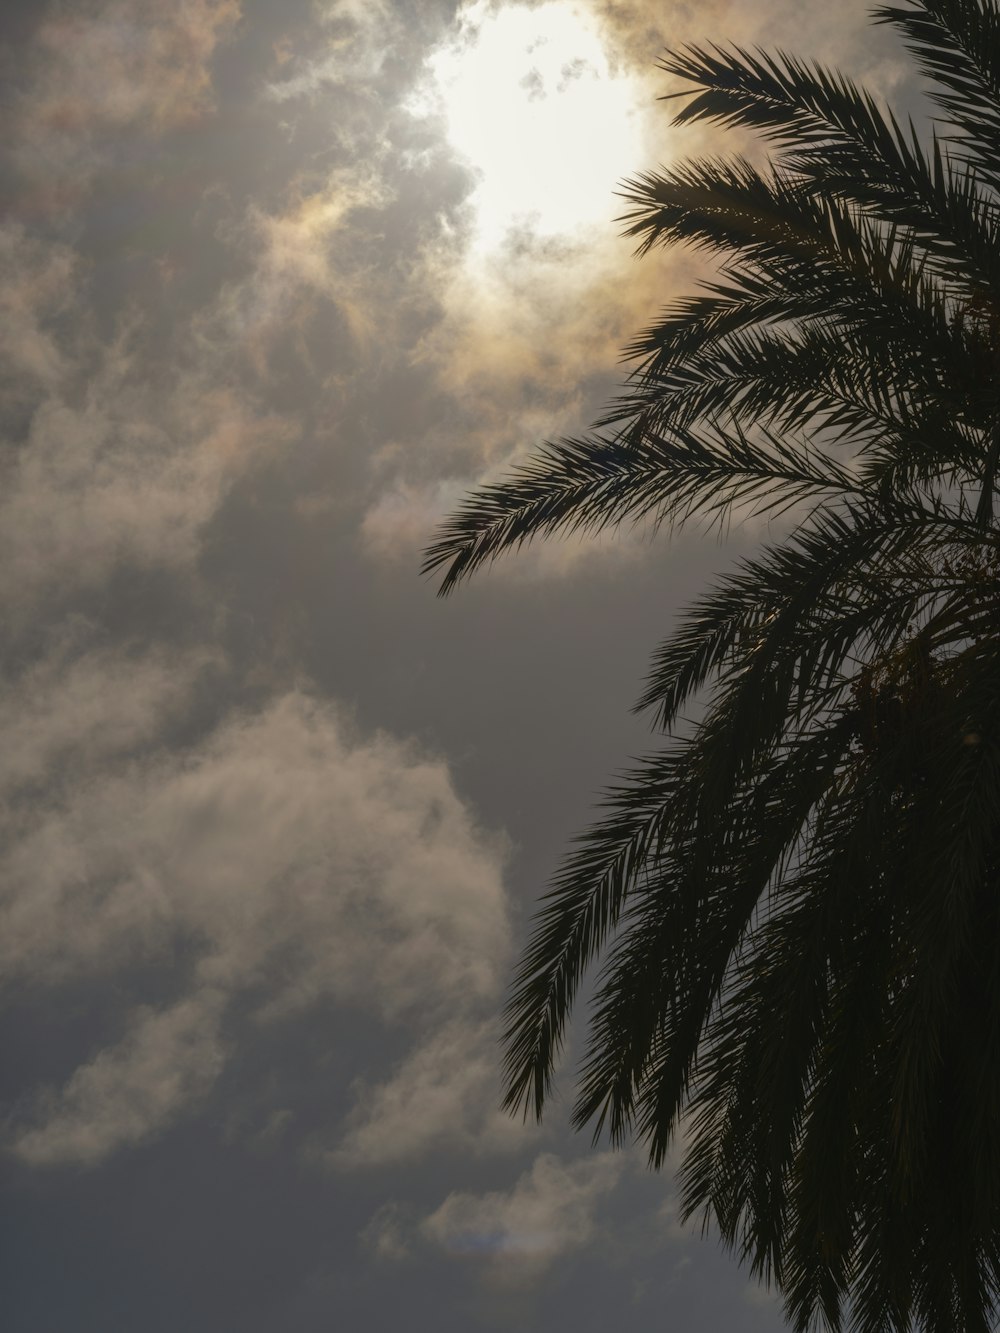 Die Sonne scheint durch die Wolken hinter einer Palme